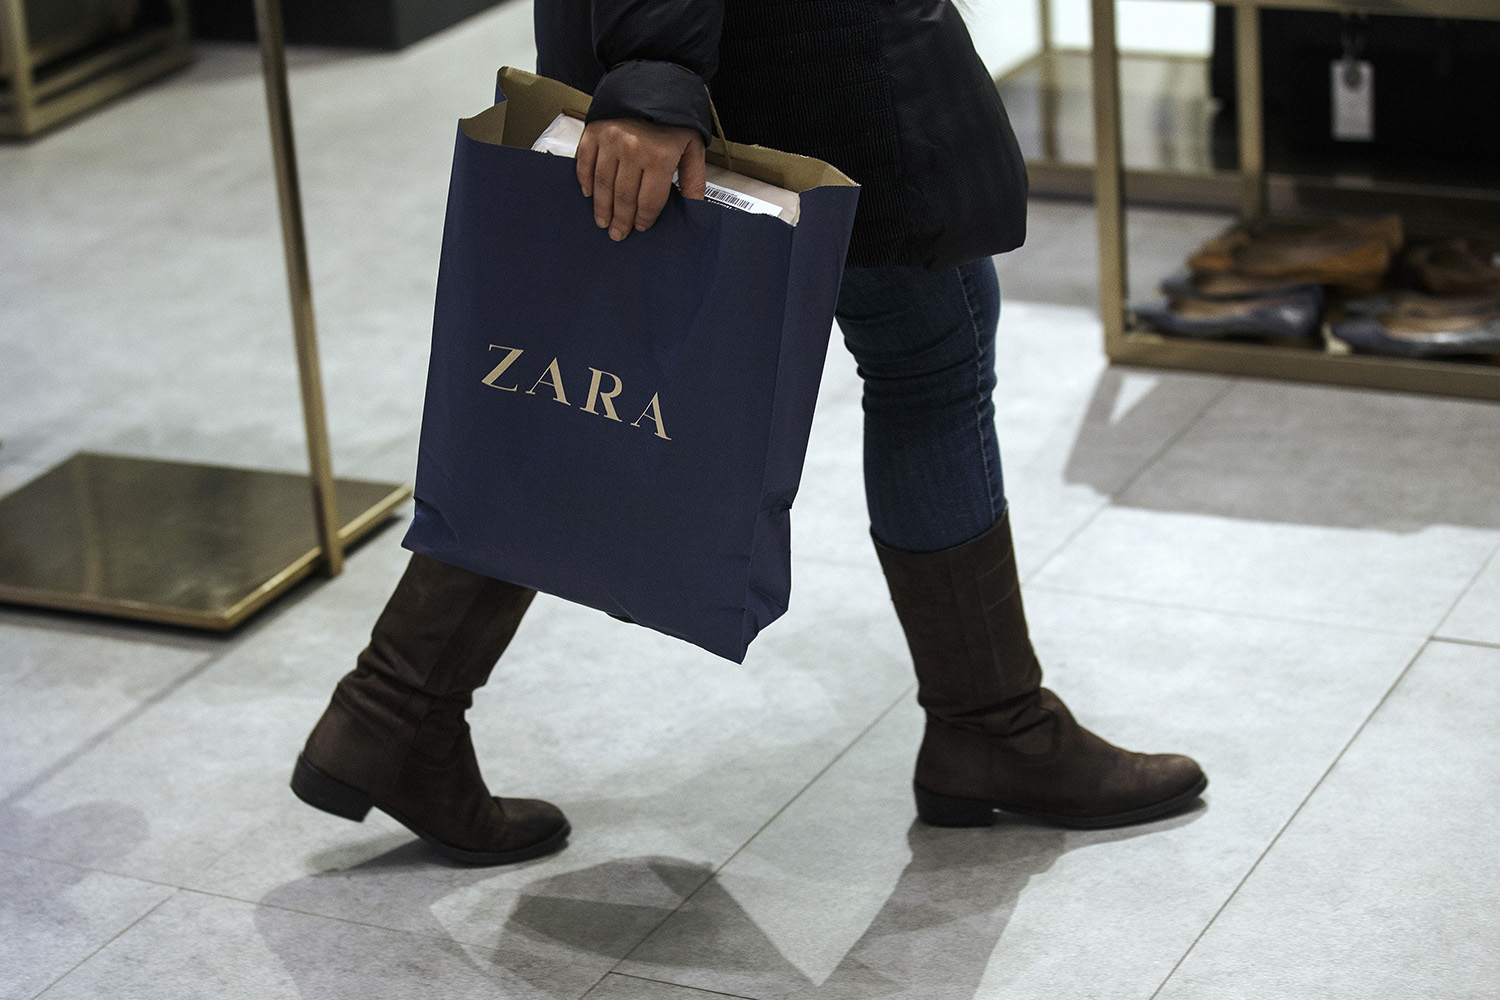 Zara se disculpa por mensajes alusivos a la esclavitud